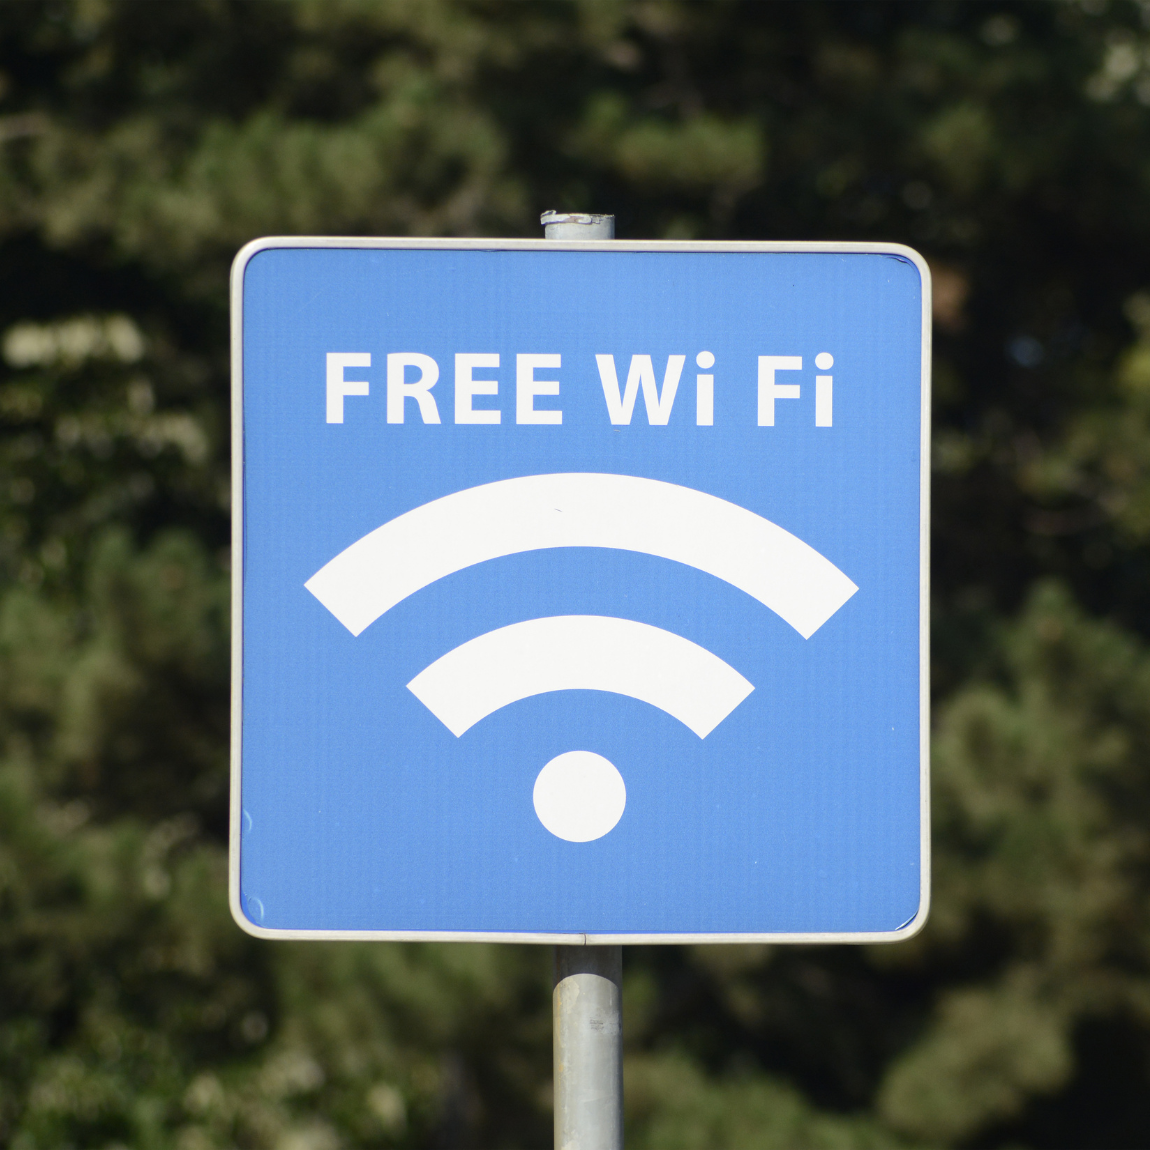 Free Wi-FI